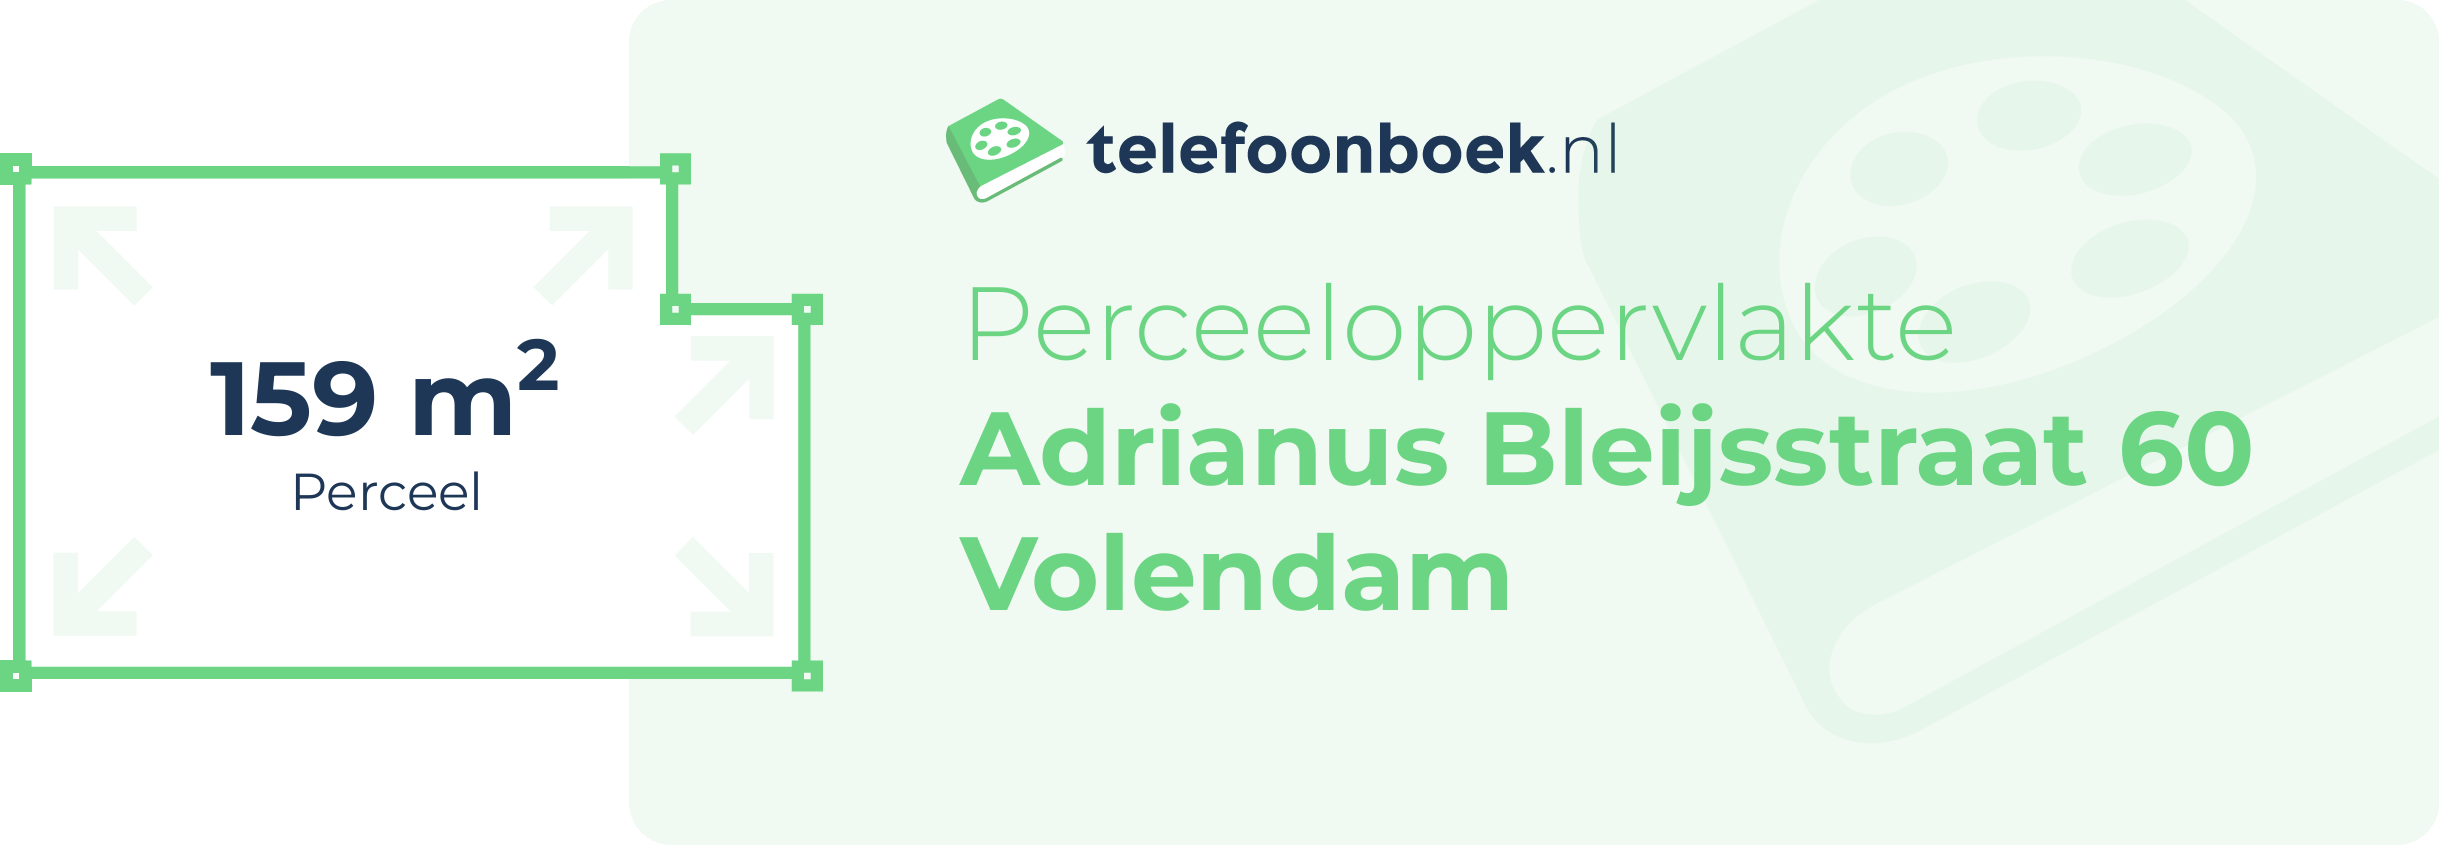 Perceeloppervlakte Adrianus Bleijsstraat 60 Volendam